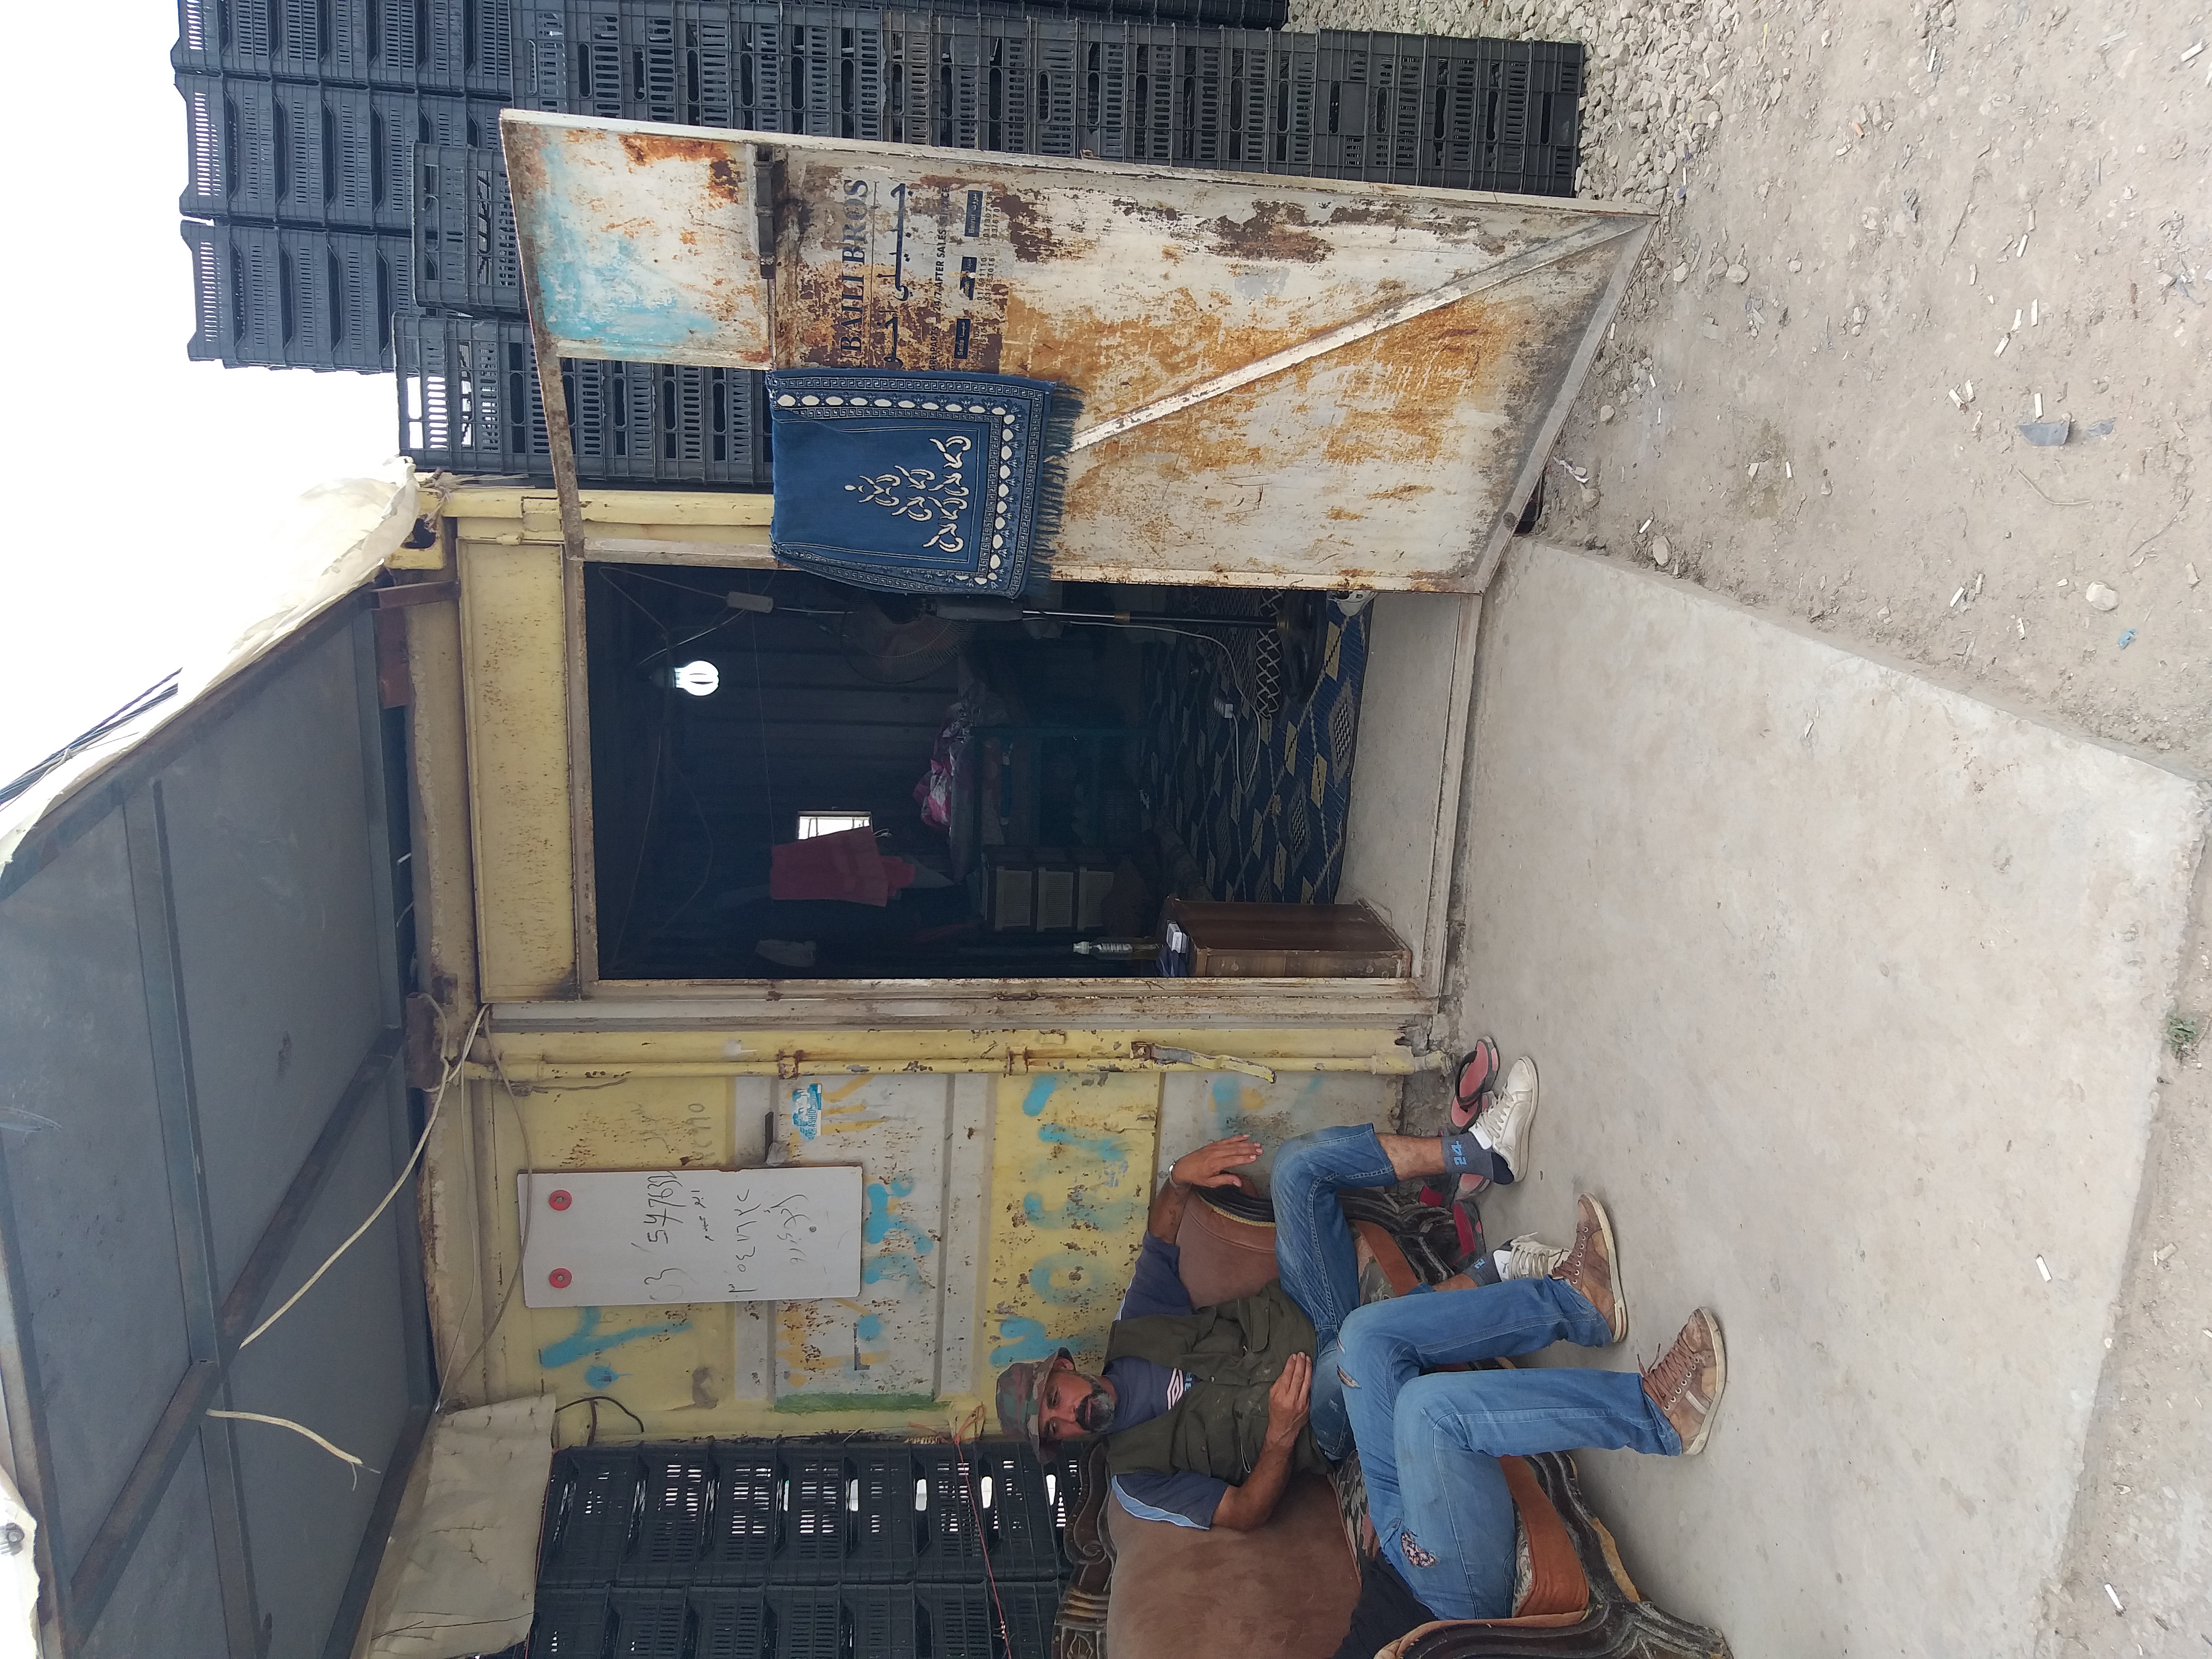 غرفة حديدية تعيش فيها واحدة من العائلات السورية في لبنان -فوكس حلب